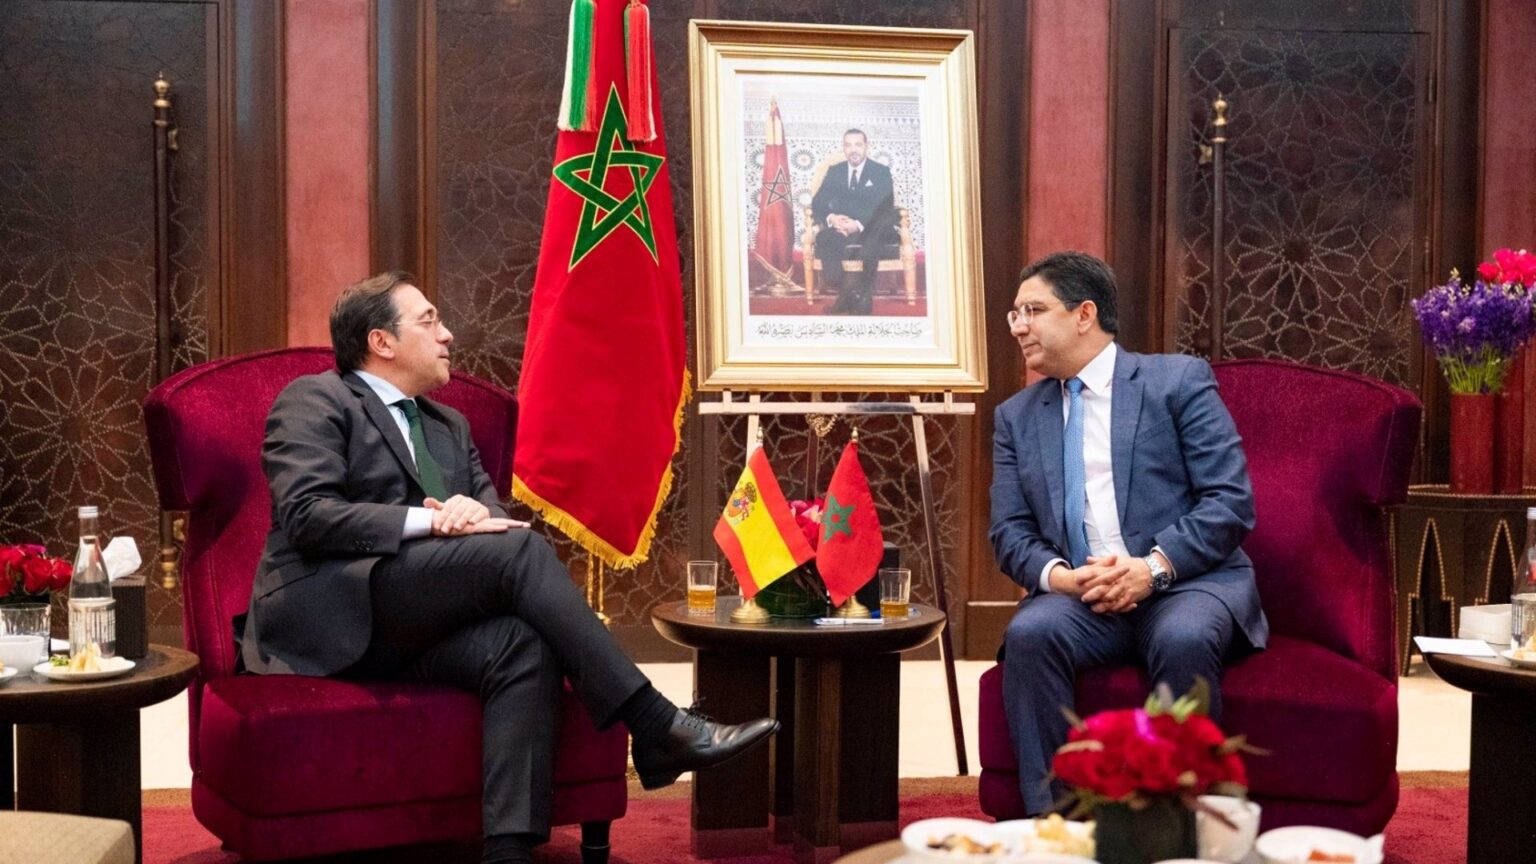 Albares anuncia una cumbre bilateral entre Sánchez y su homólogo marroquí en noviembre